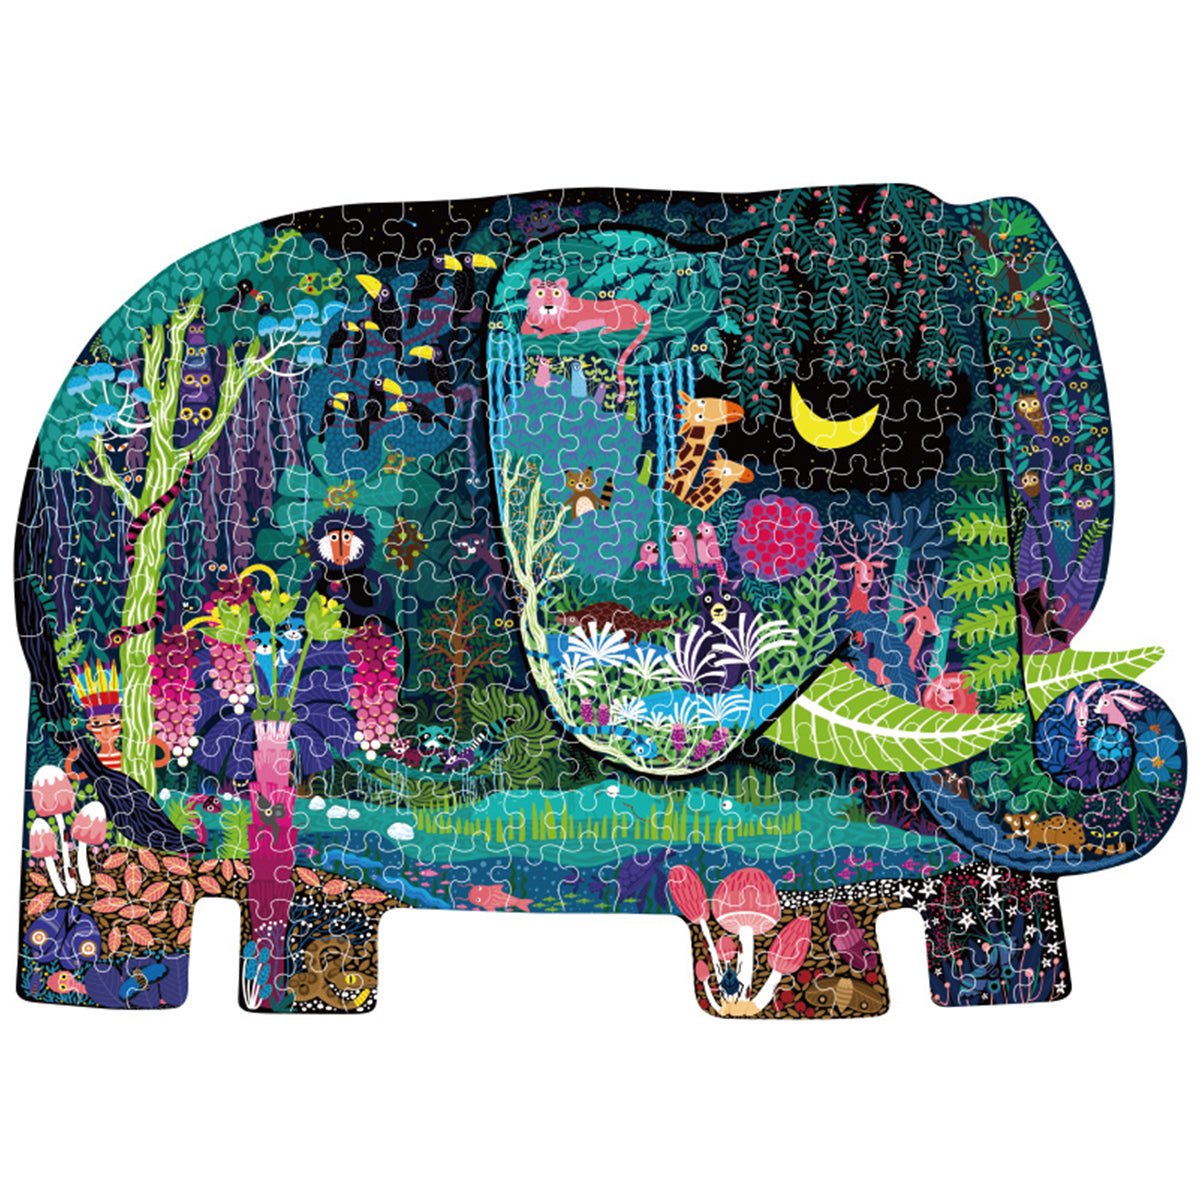 Elephant Dream Puzzle 280pcs - 0cm